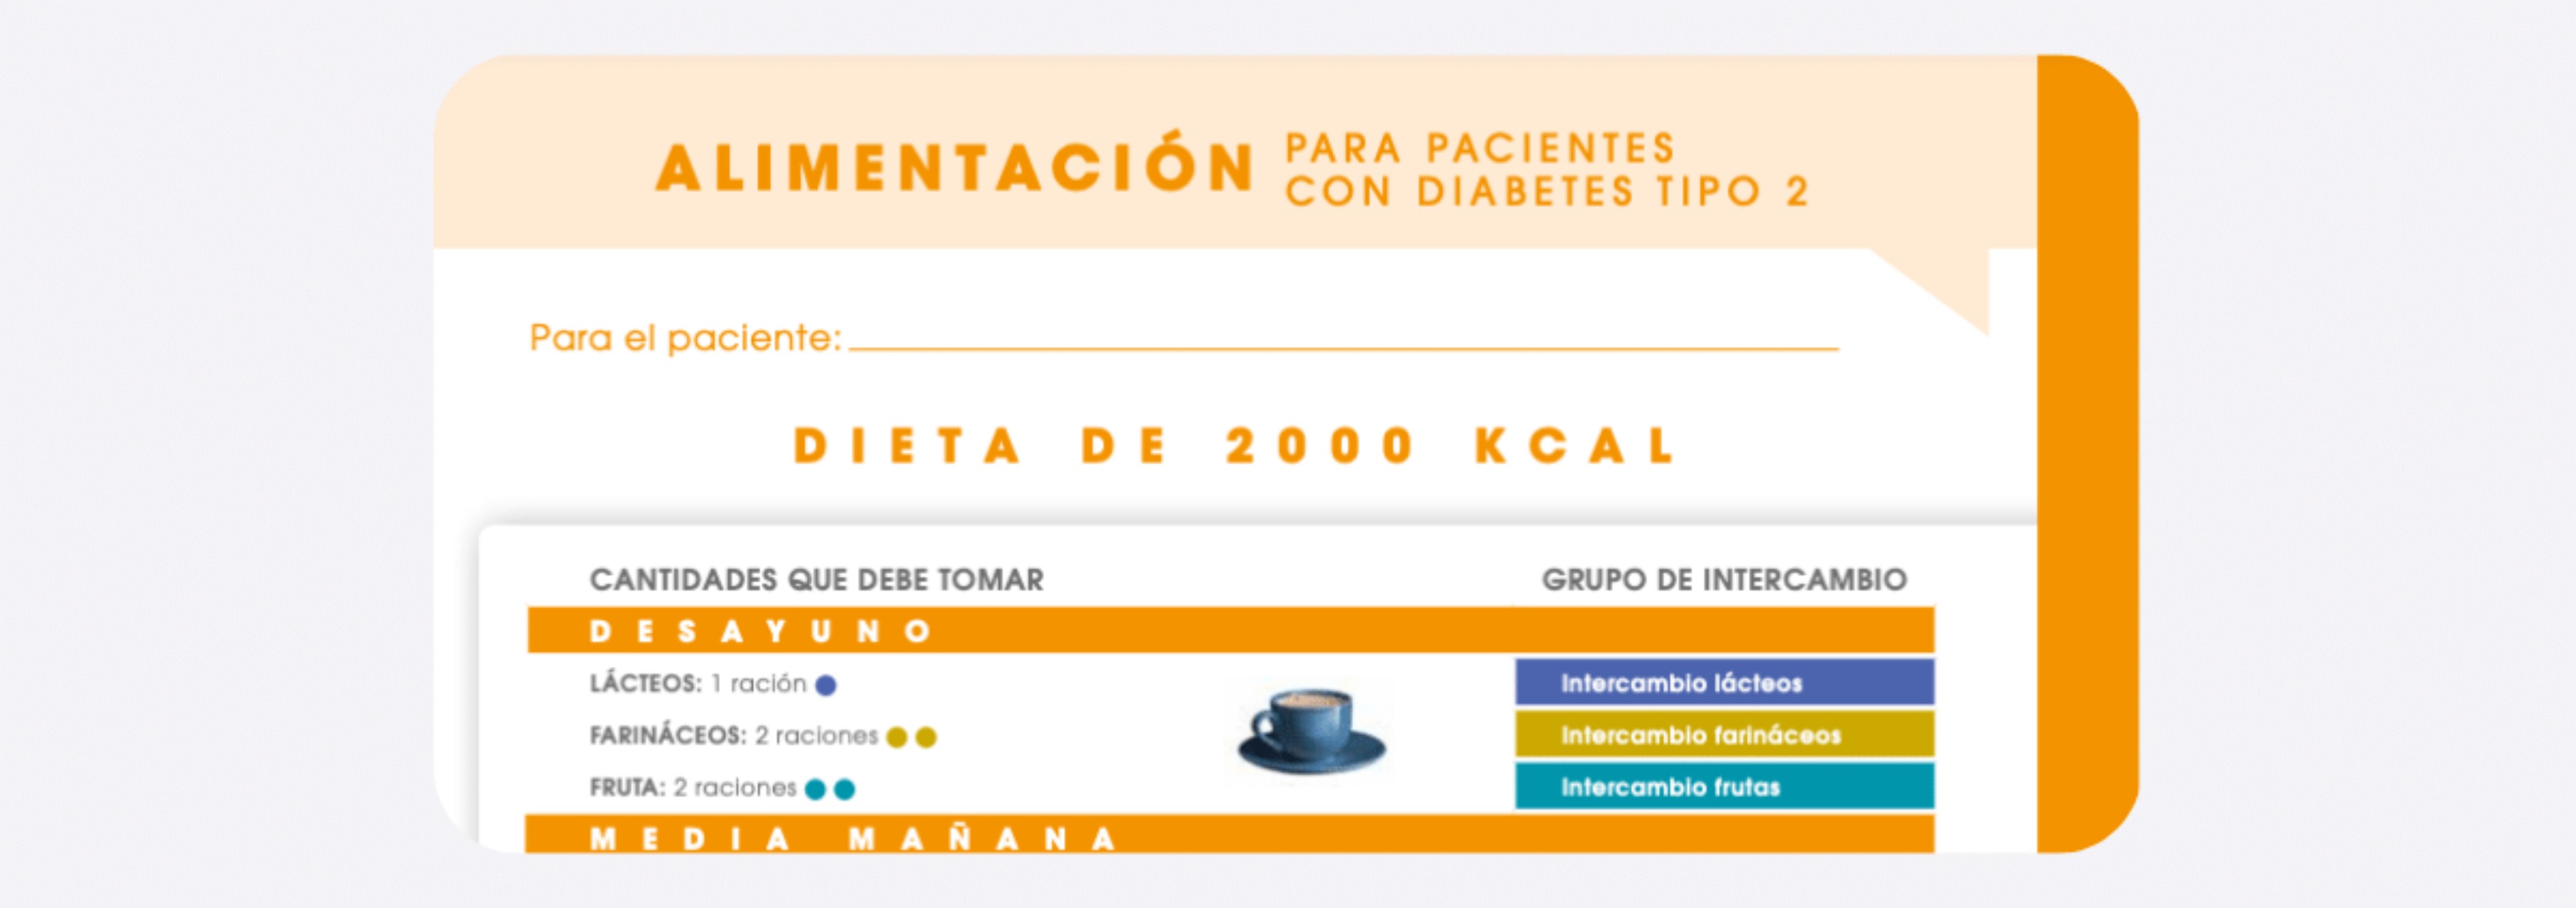 Dieta Equilibrada de 2000 kcal para personas con Diabetes